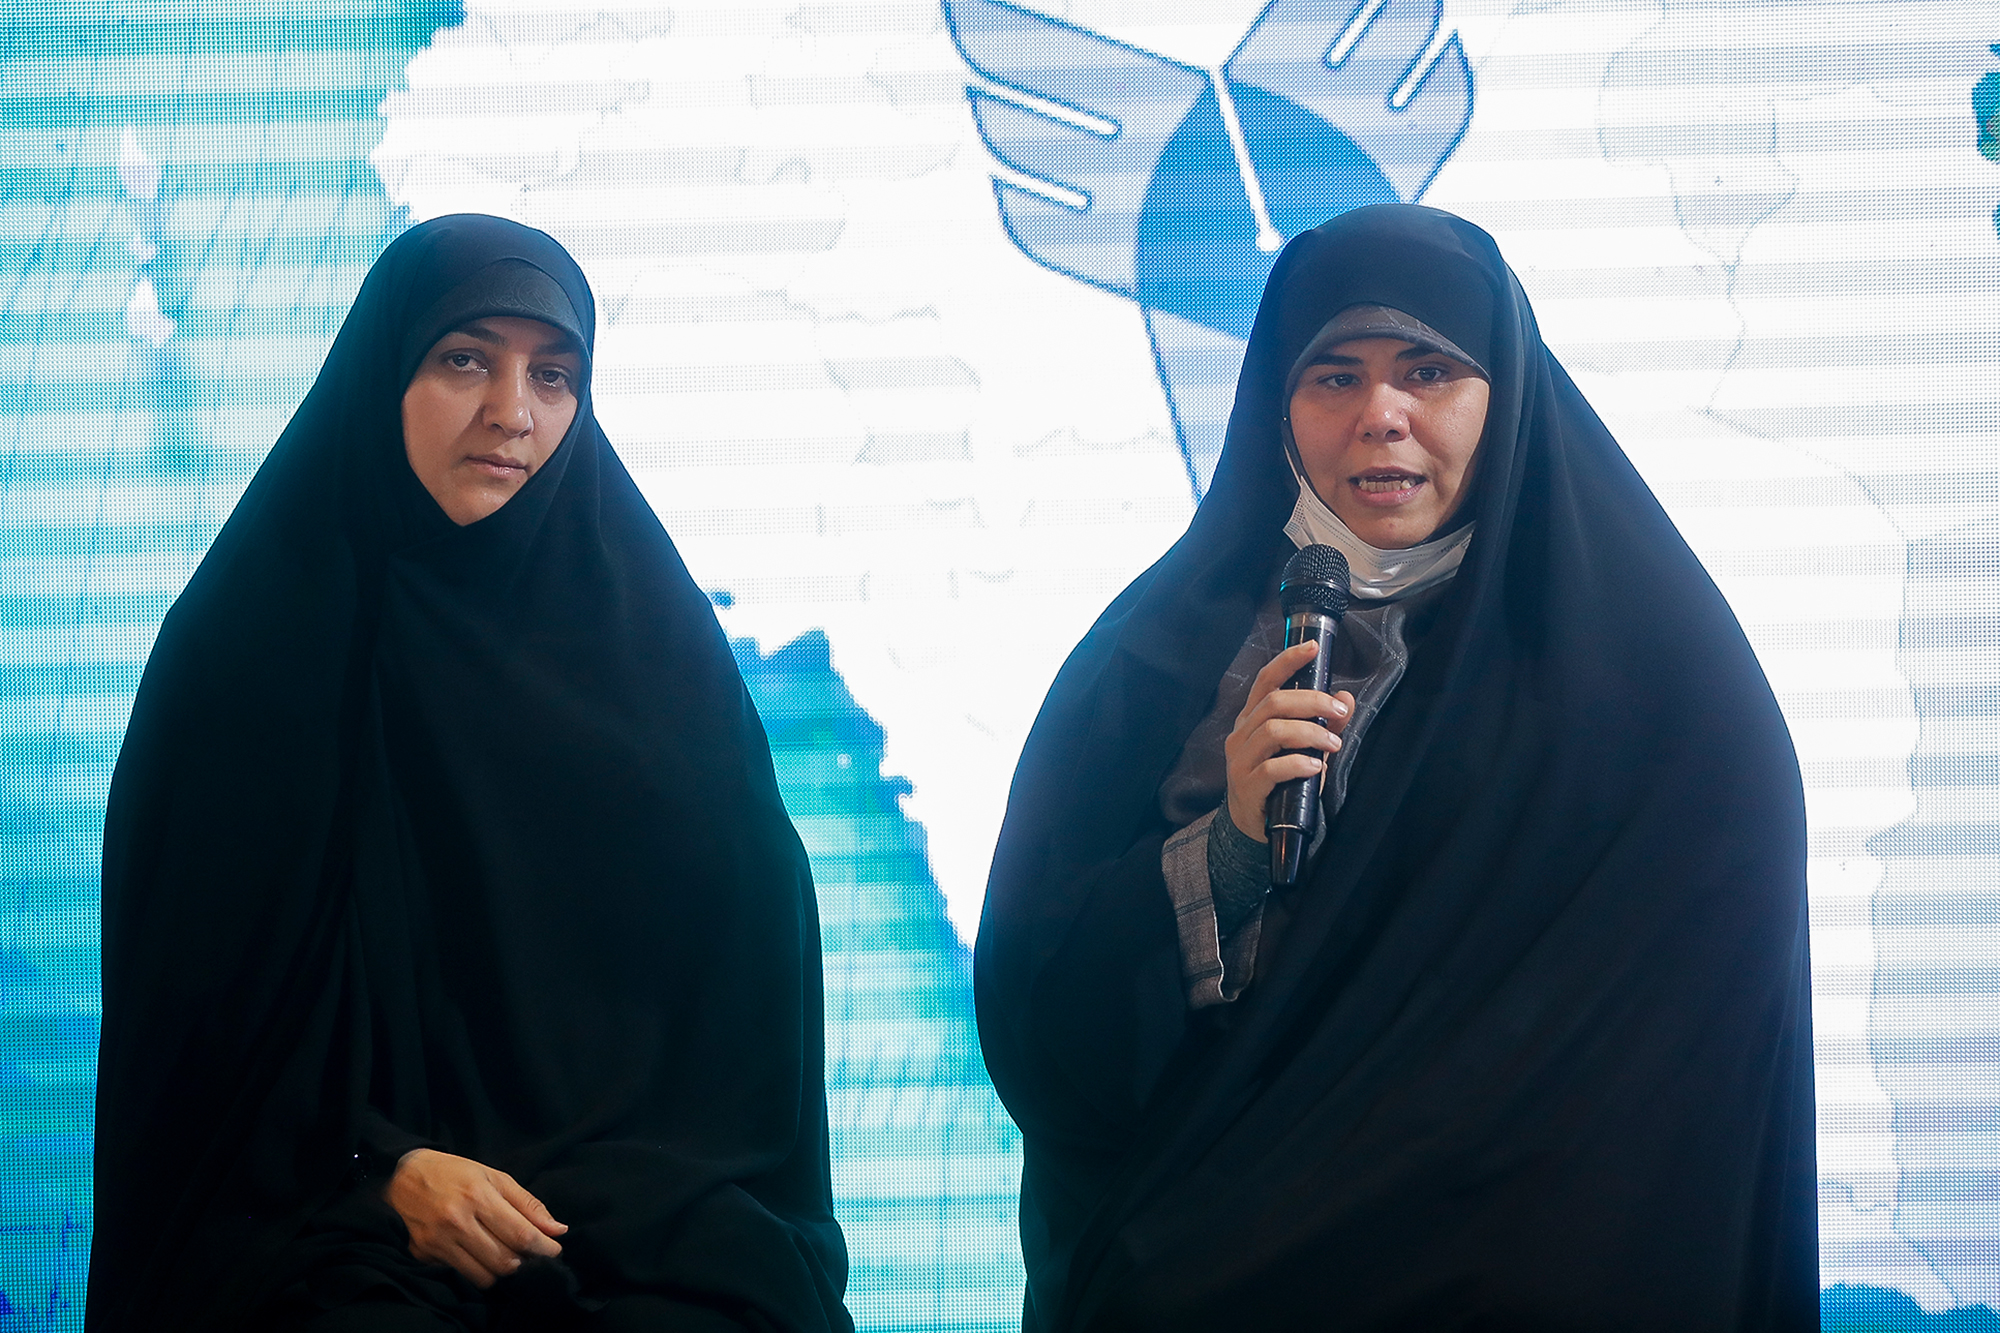 حضور رئیس فراکسیون زنان مجلس شورای اسلامی در نمایشگاه رویداد ملی عصر امید